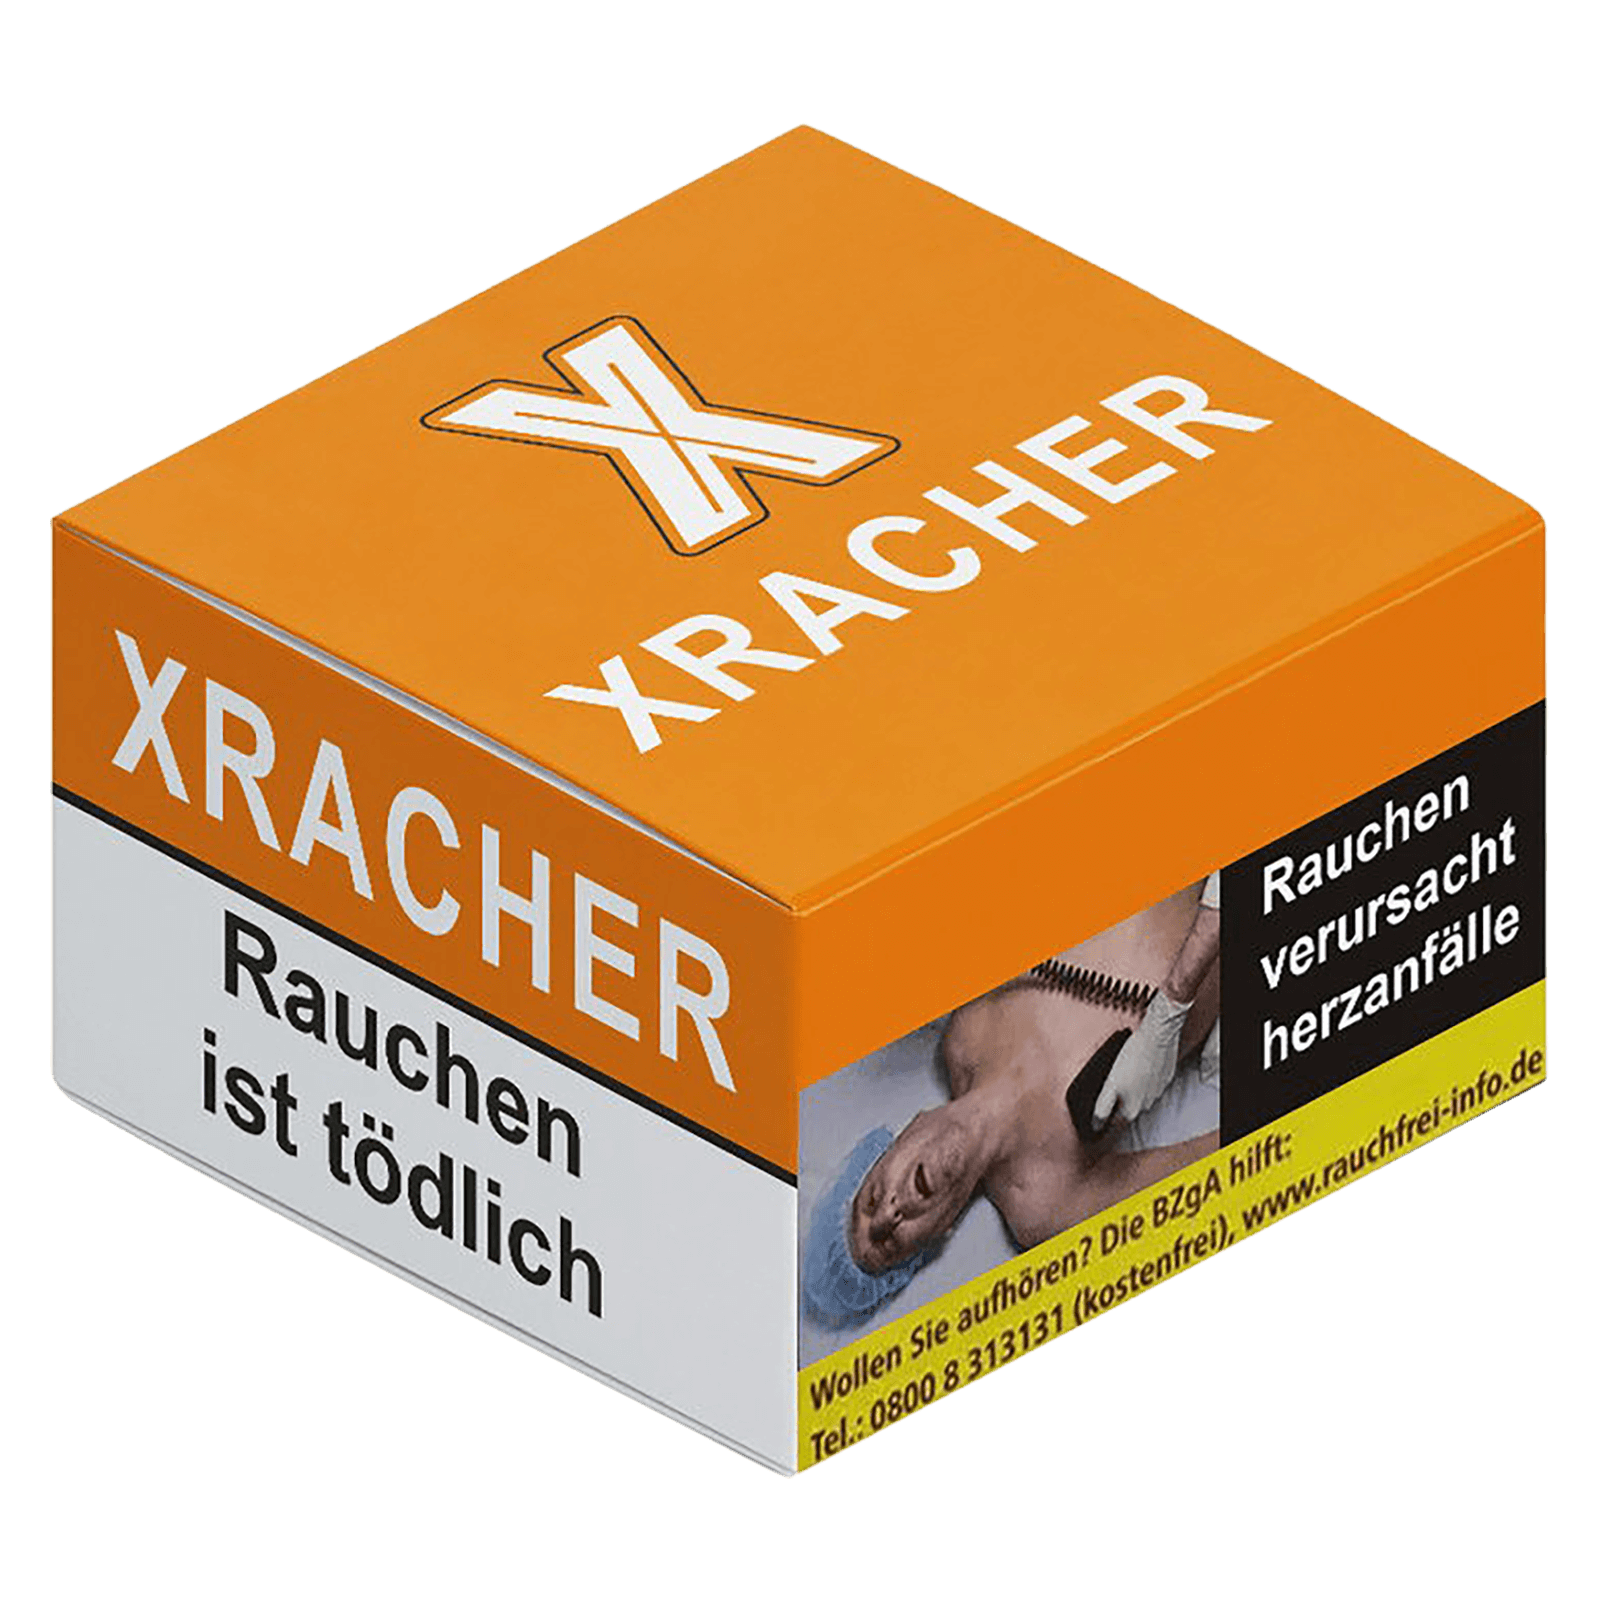 Xracher 20g - Paradzio